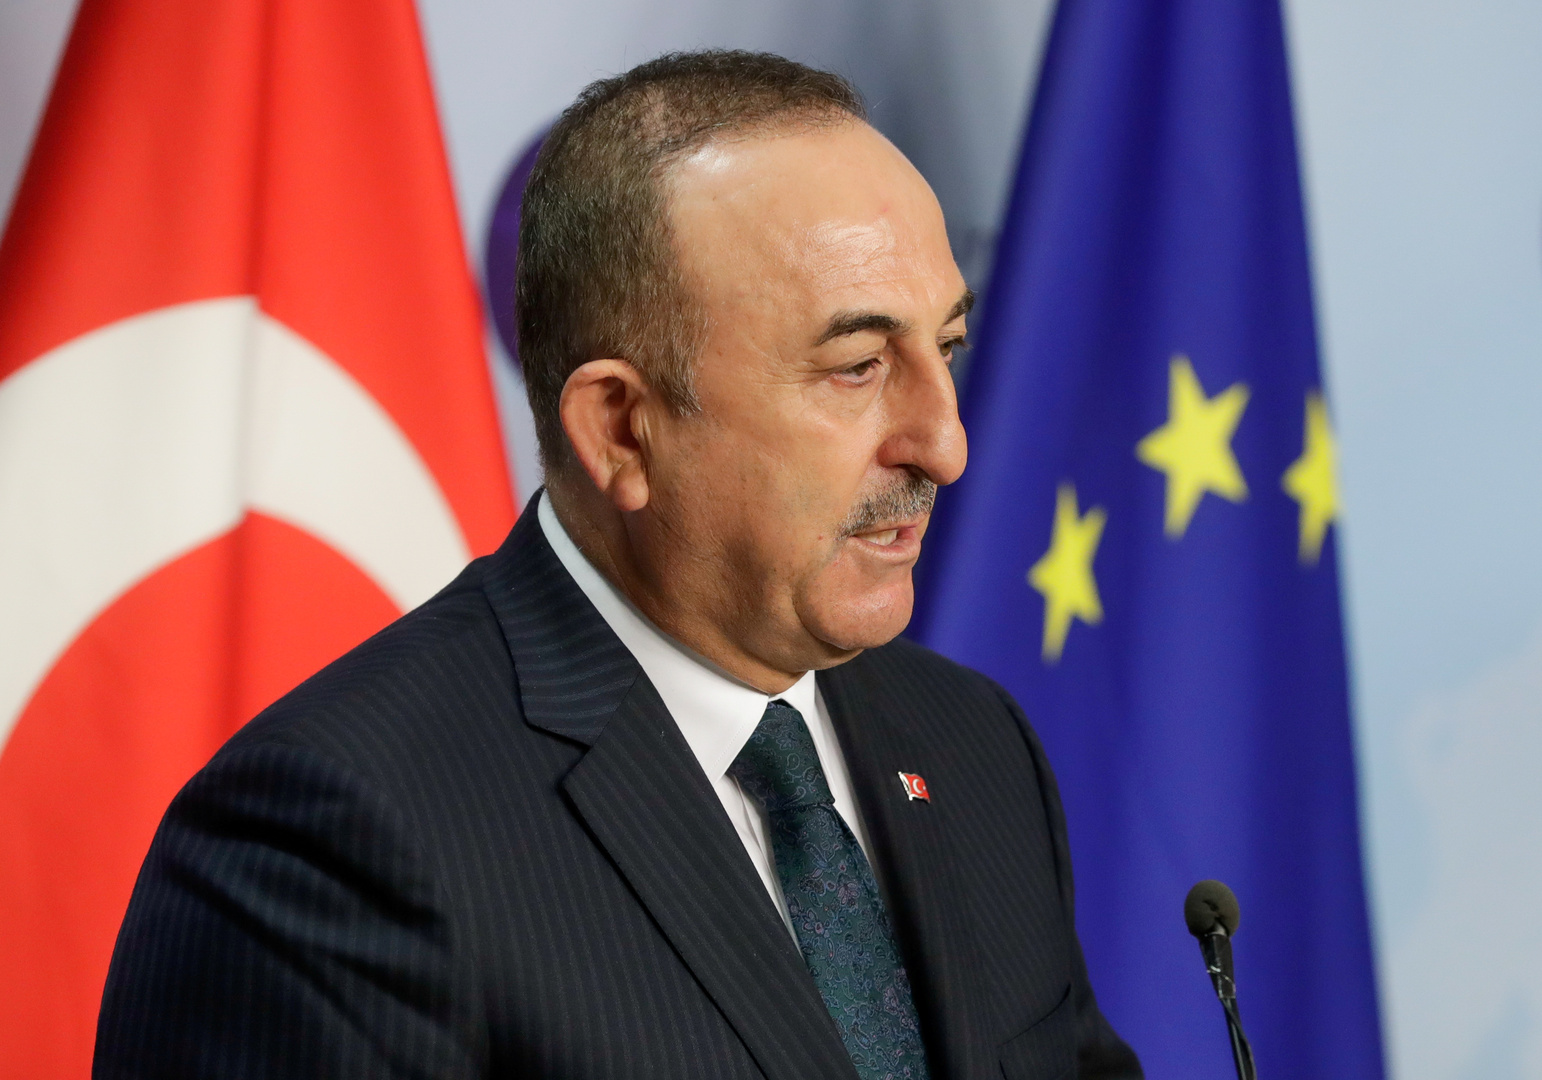 تشاووش أوغلو: سأعمل مع بوريل لمواصلة الأجندة الإيجابية بين تركيا والاتحاد الأوروبي